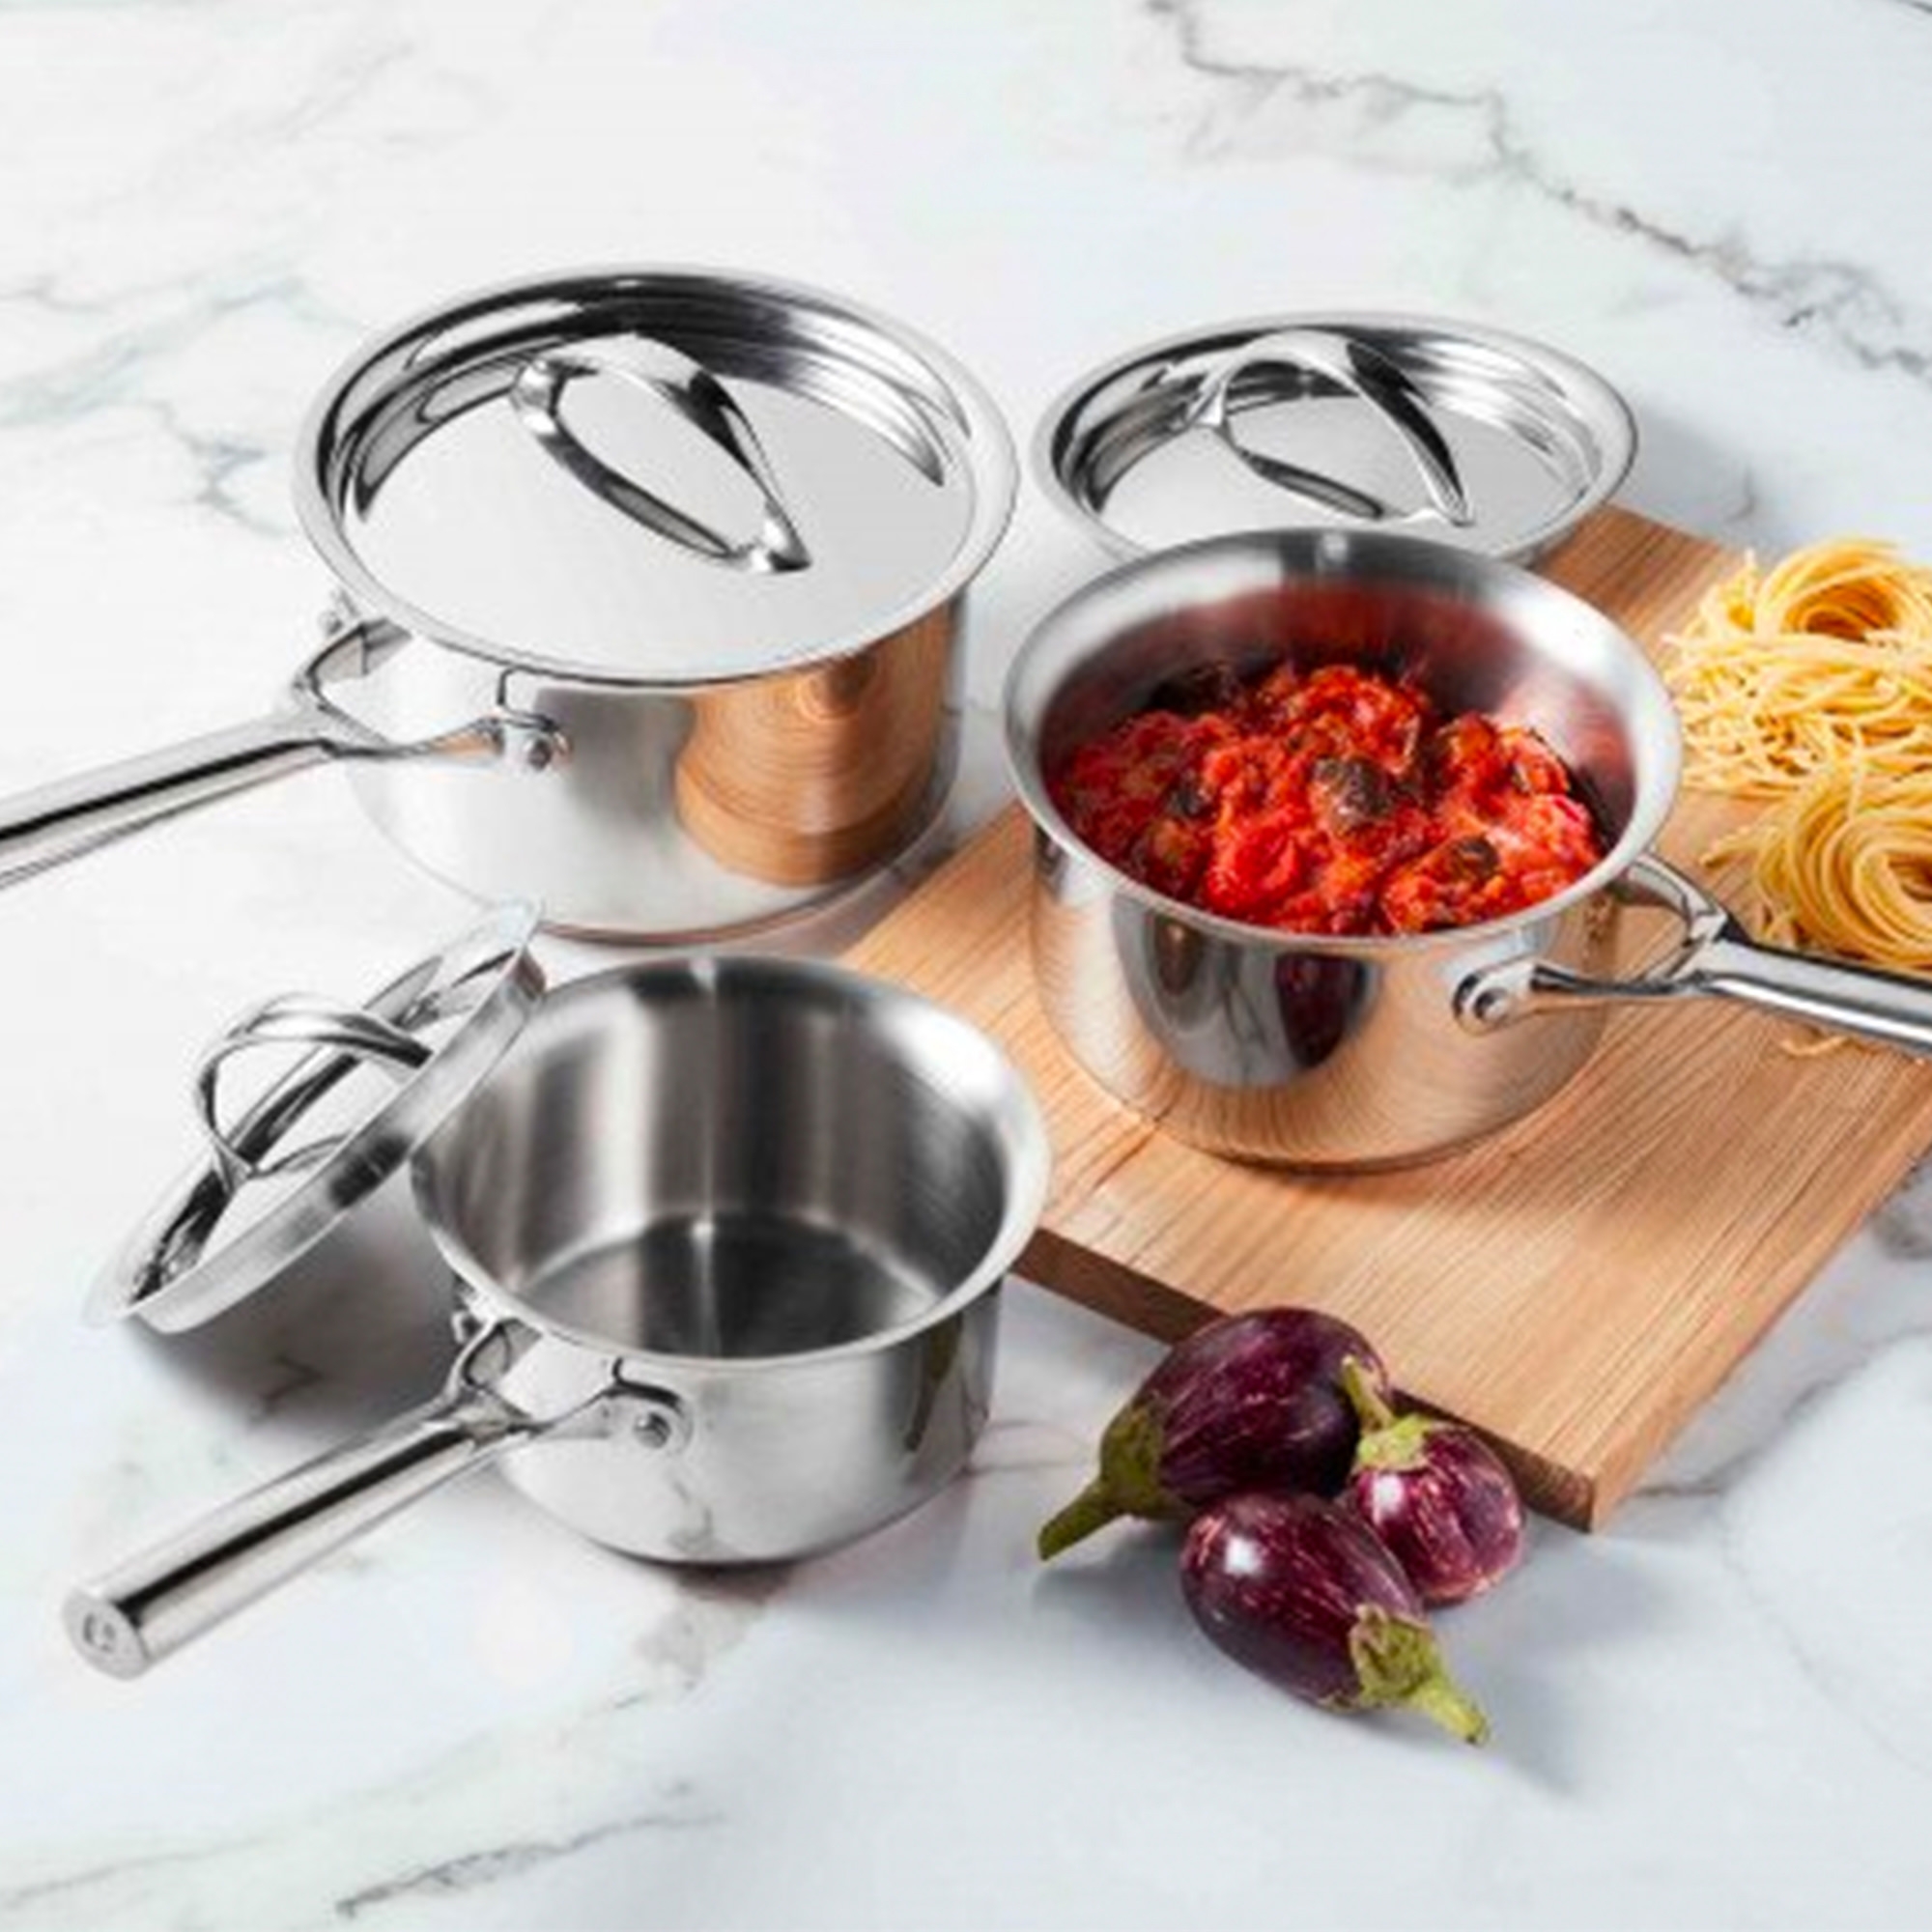 Essteele Per Vita 3pc Stainless Steel Cookware Set Image 2